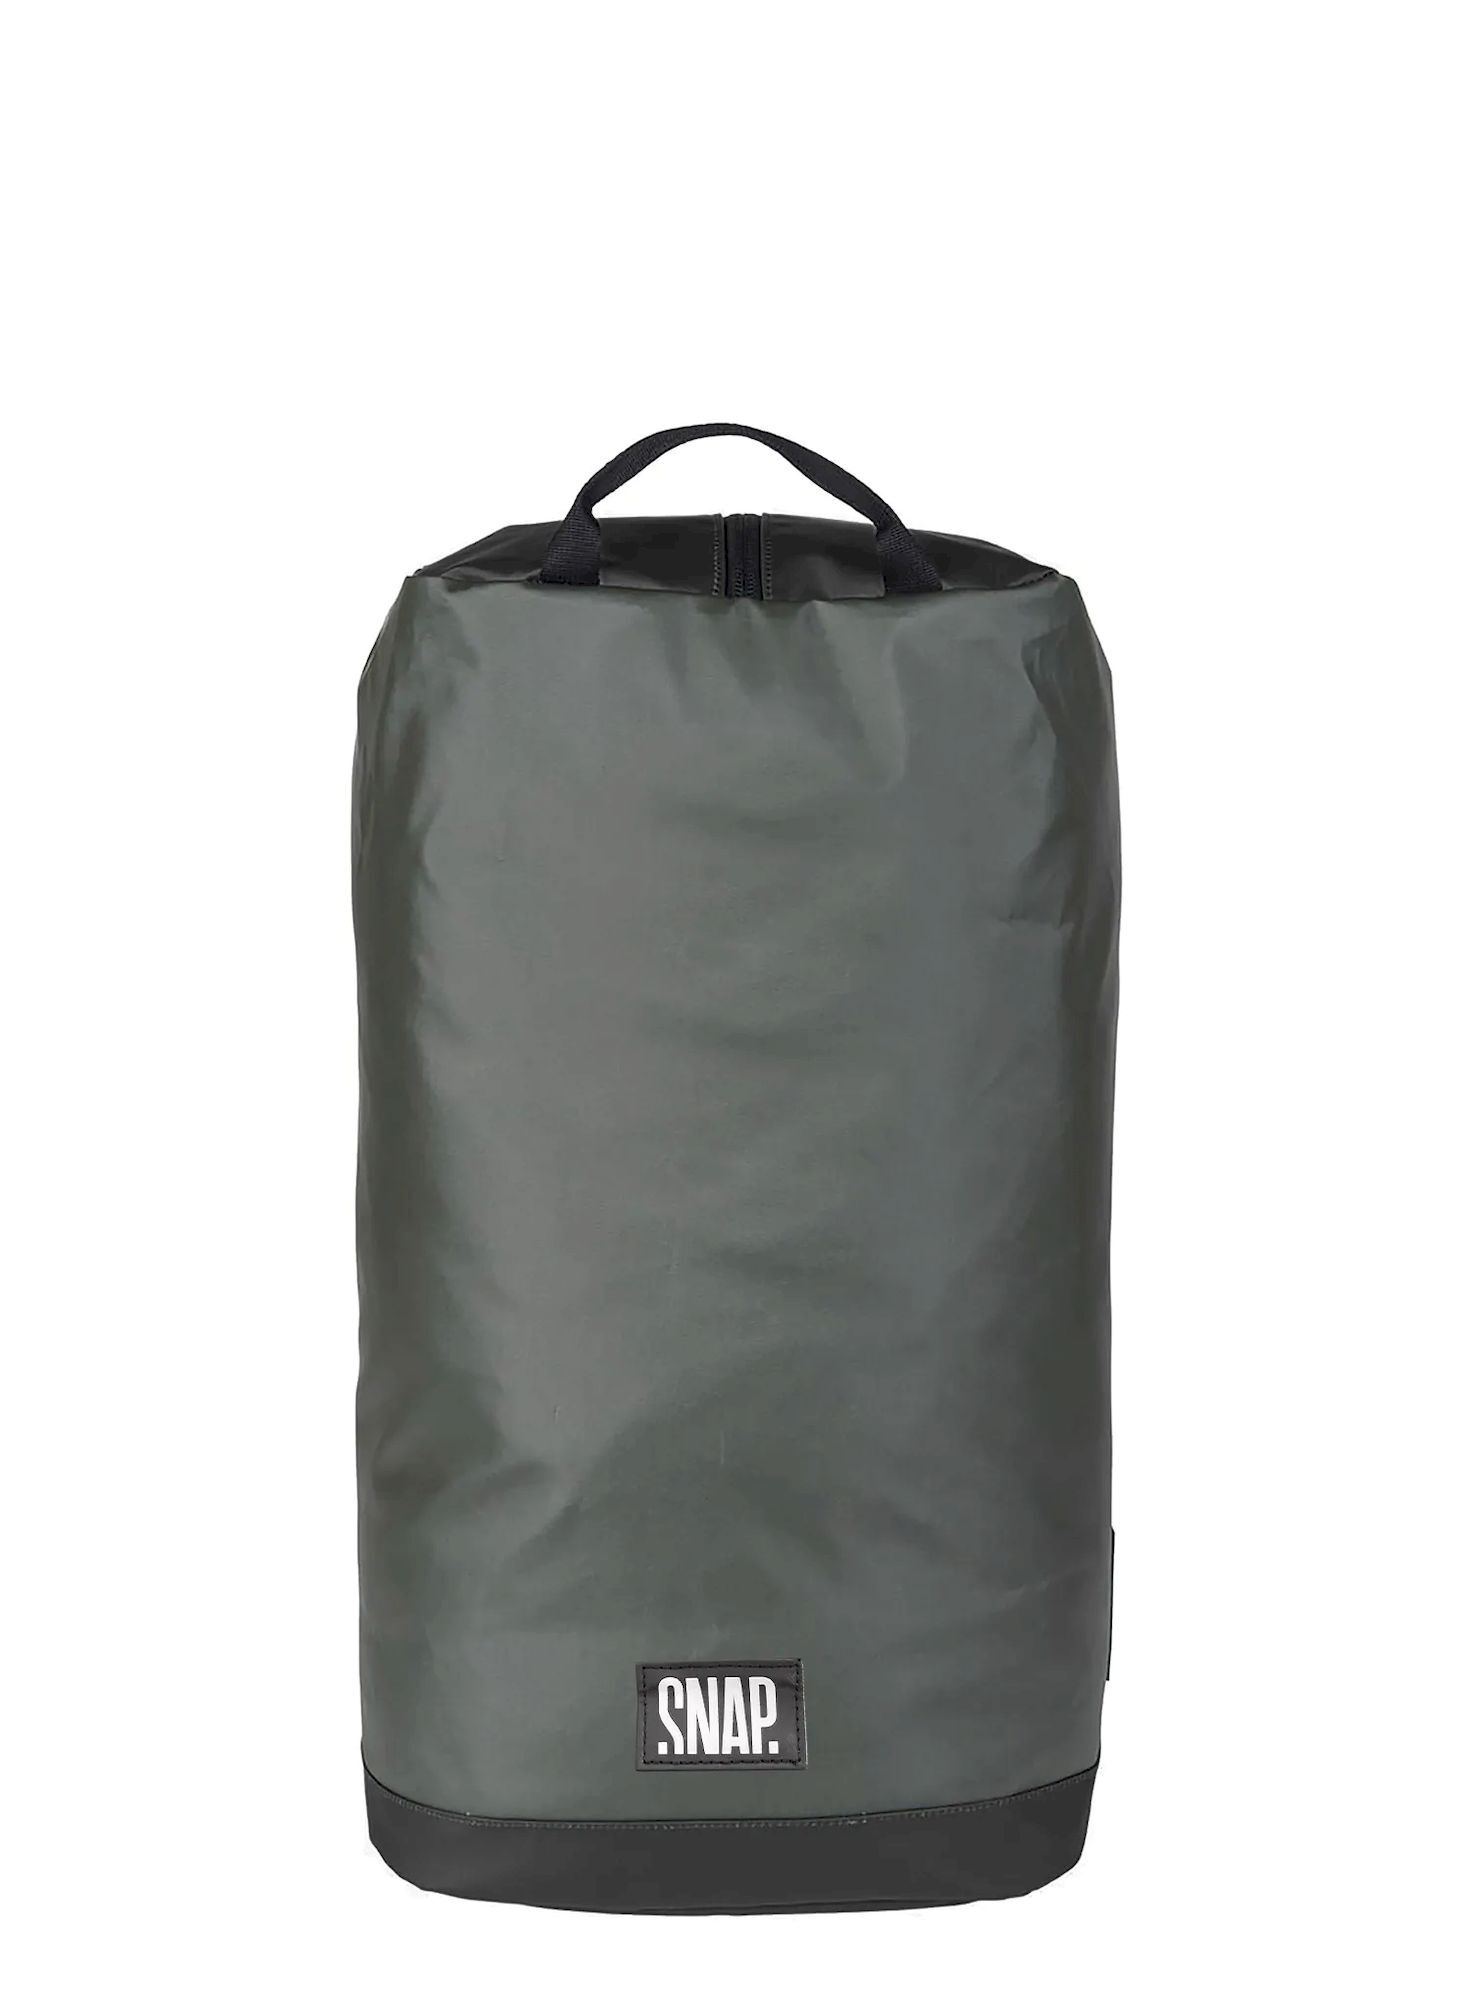 Snap Snapack - Climbing backpack